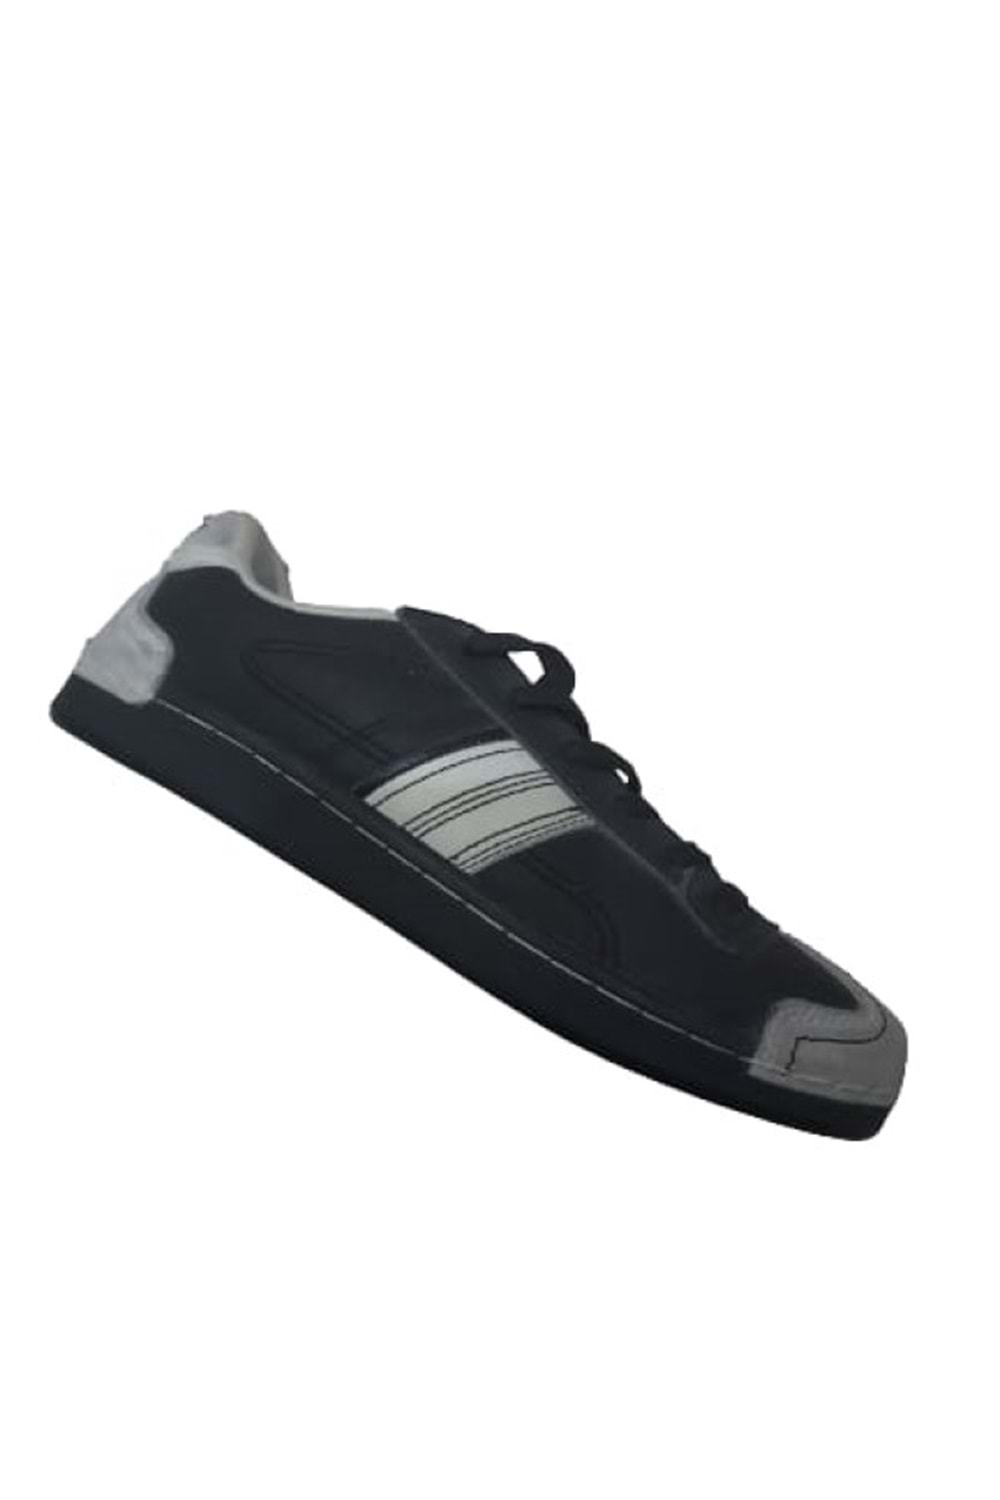 Lescon Lx-2037 Kadın Sneakers Günlük Spor Ayakkabı - Siyah